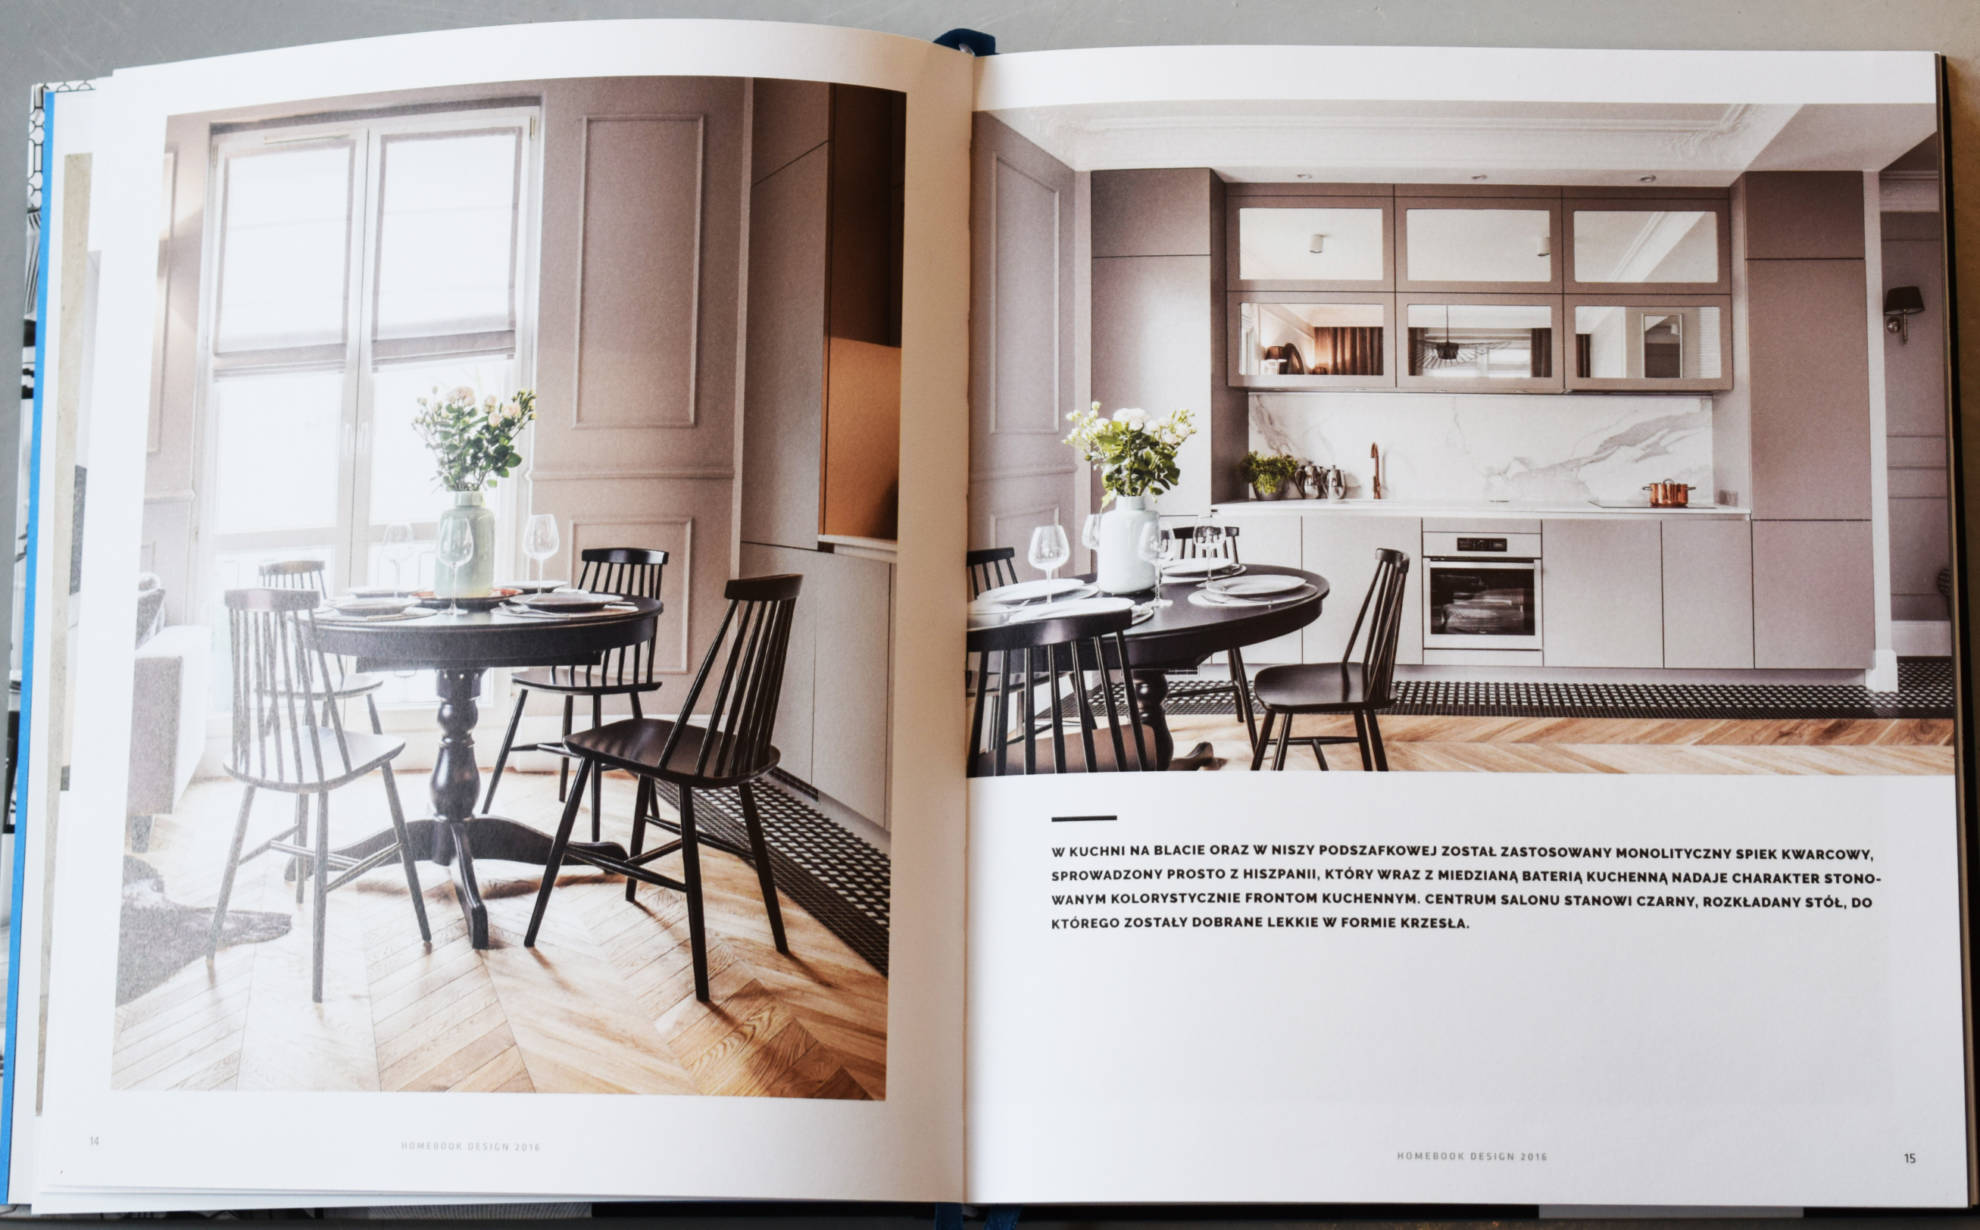 Publikacja aranżacji mieszkania w kamienicy w czasopismie branżowym - SAS Wnętrza i Kuchnie.